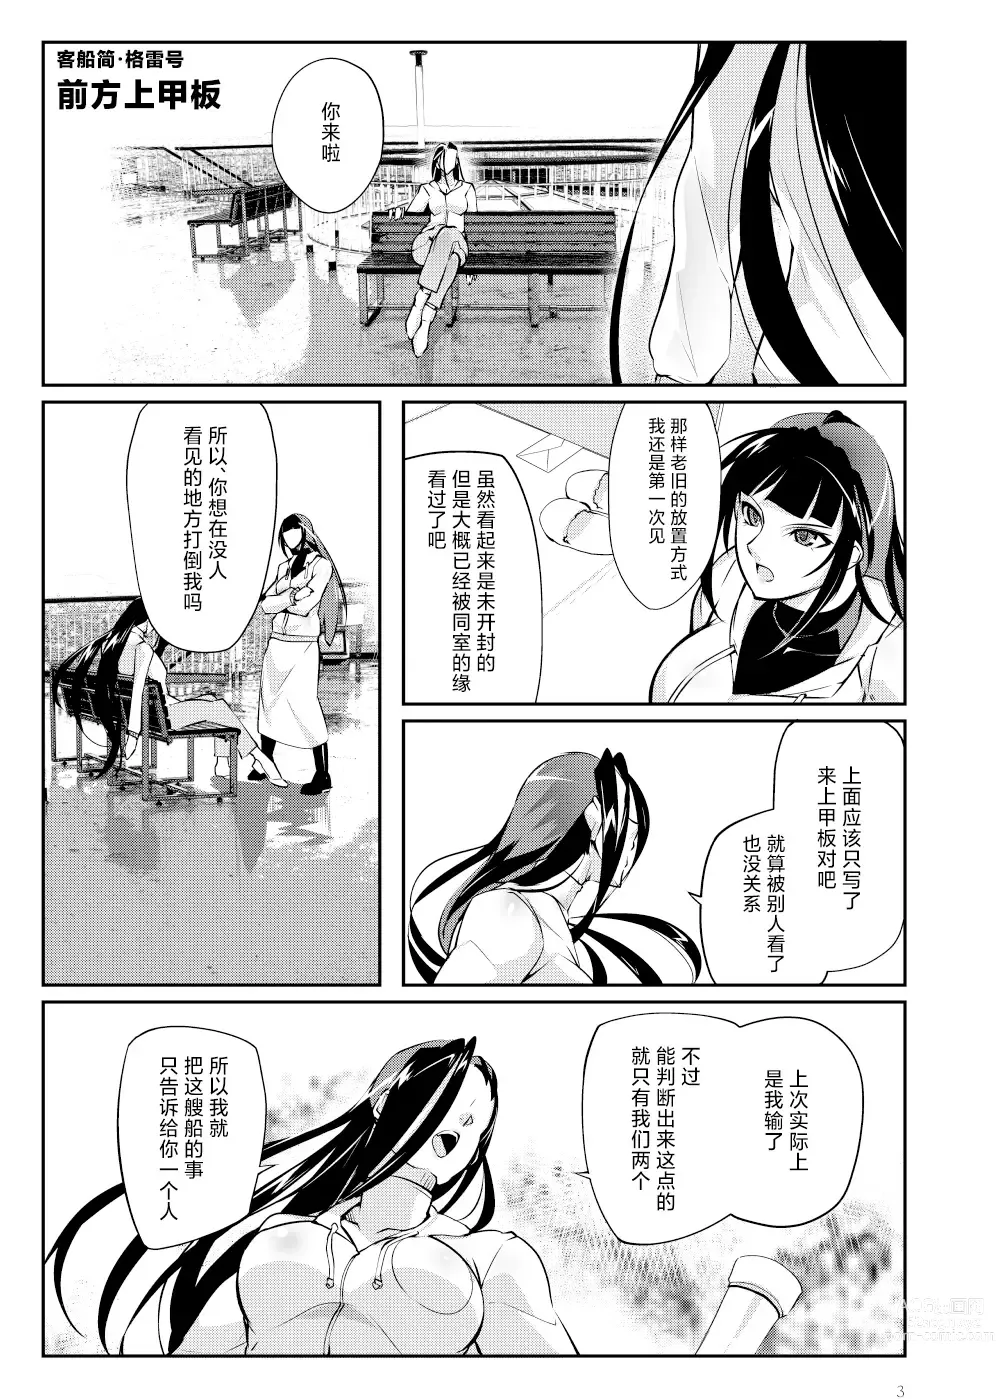 Page 2 of doujinshi Tougijou Rin - Arena Rin 6